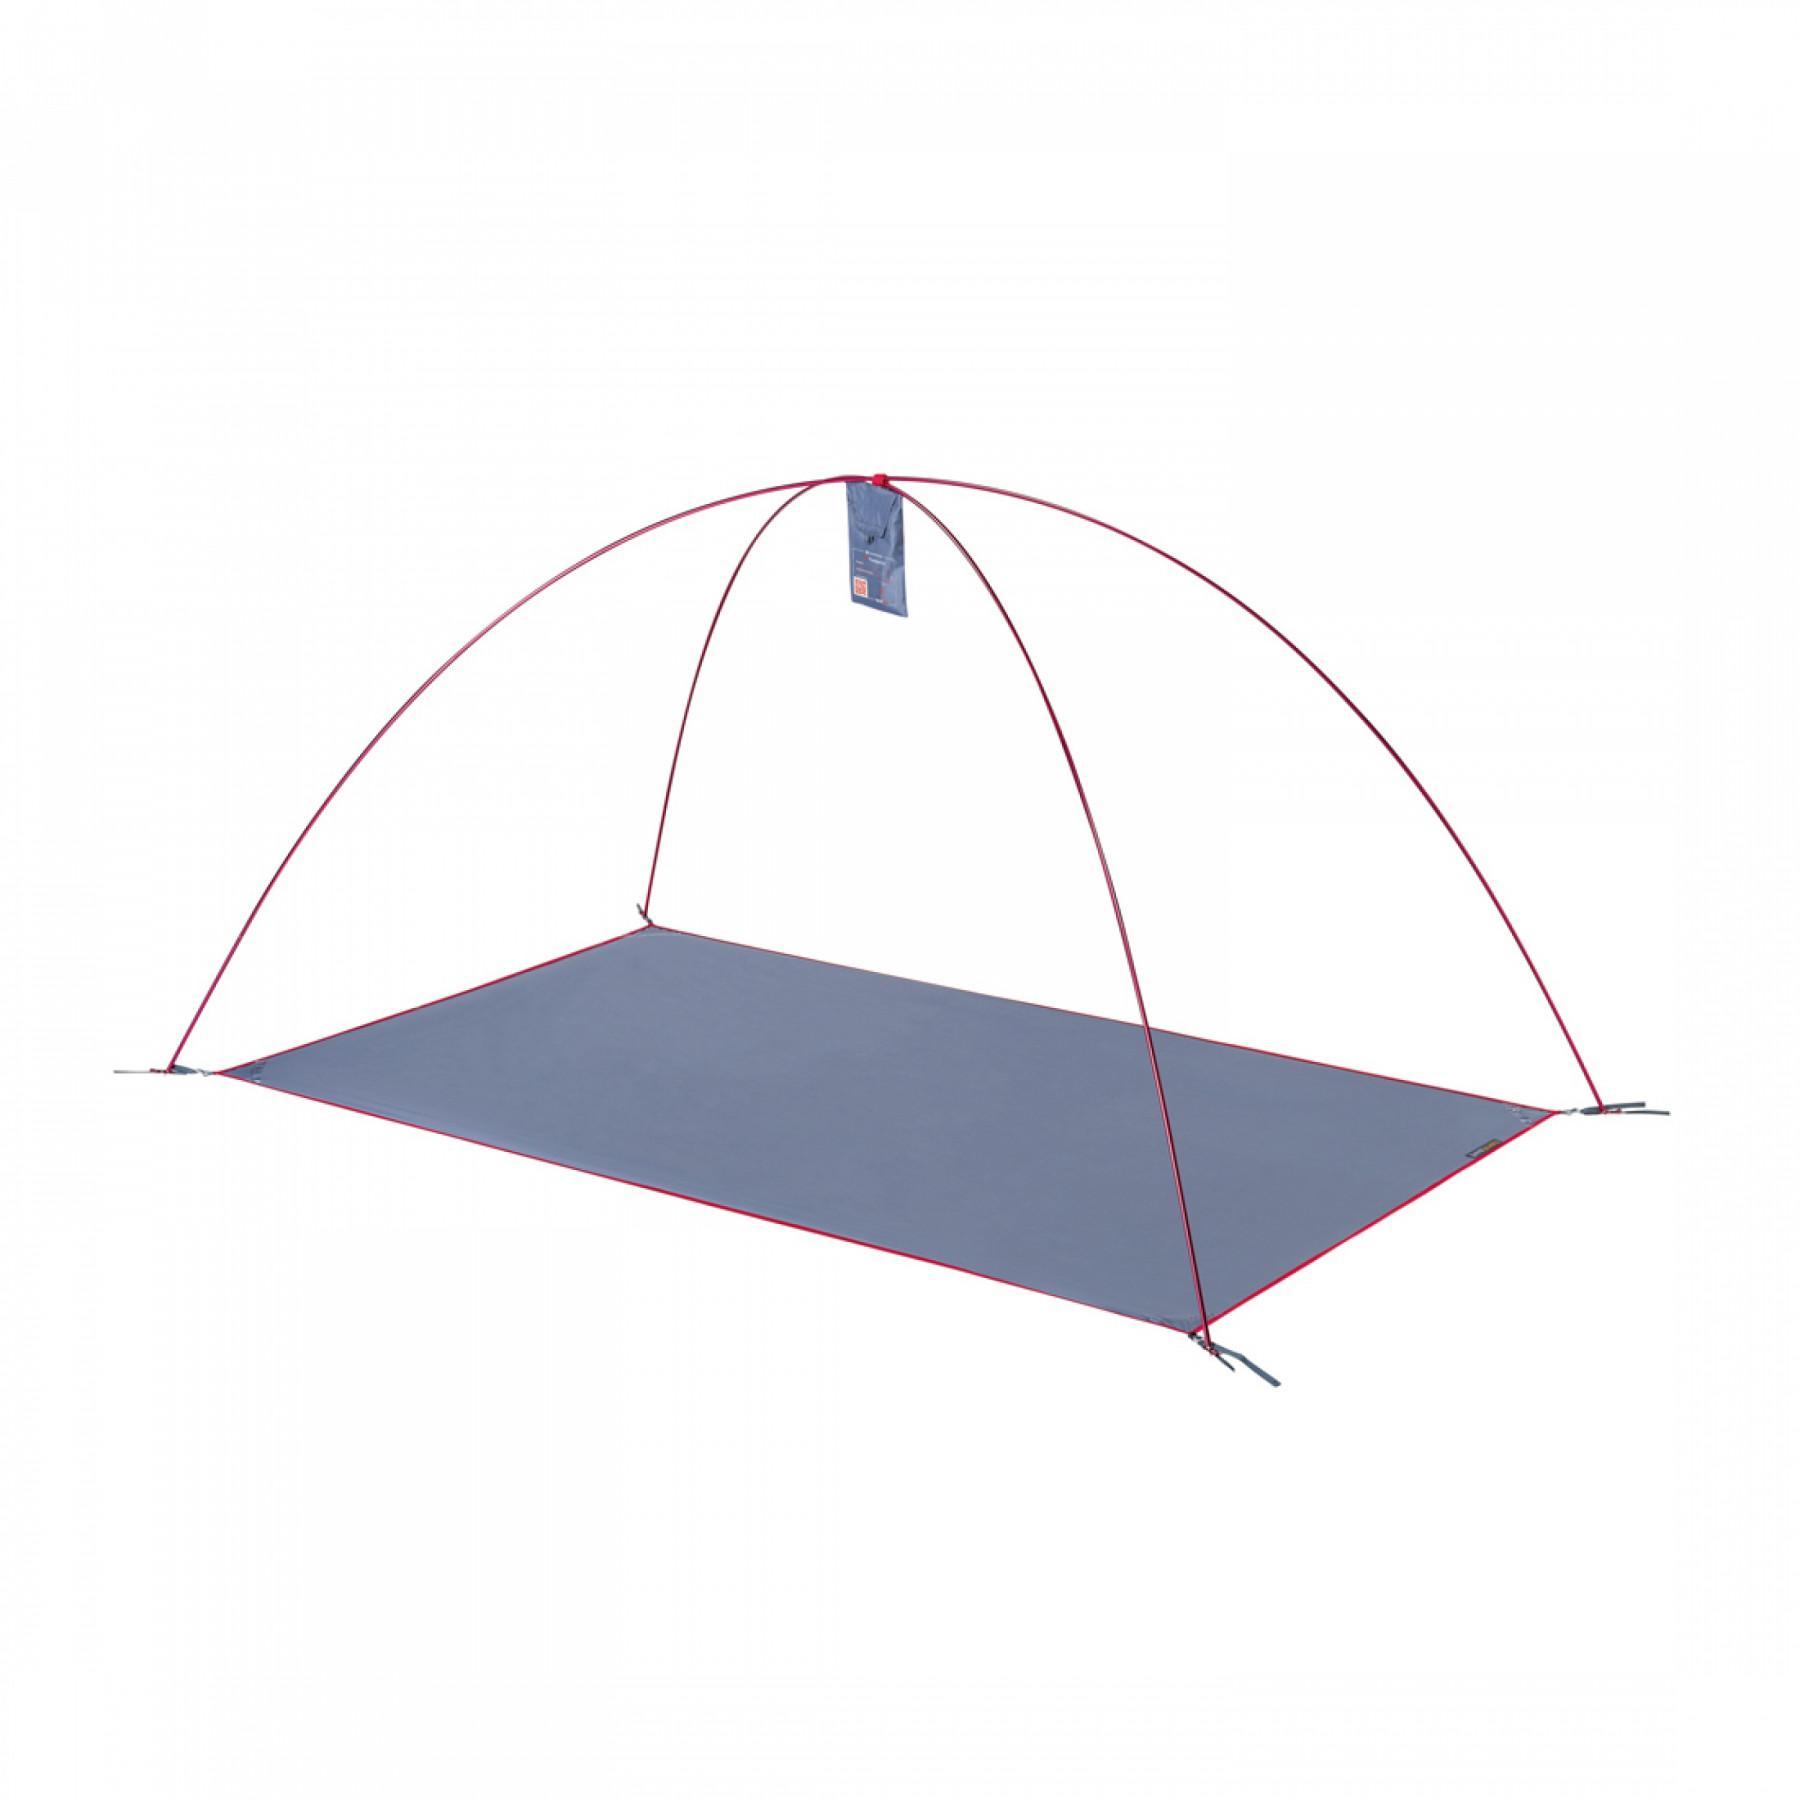 Tent ground sheet Ferrino X2 foot print